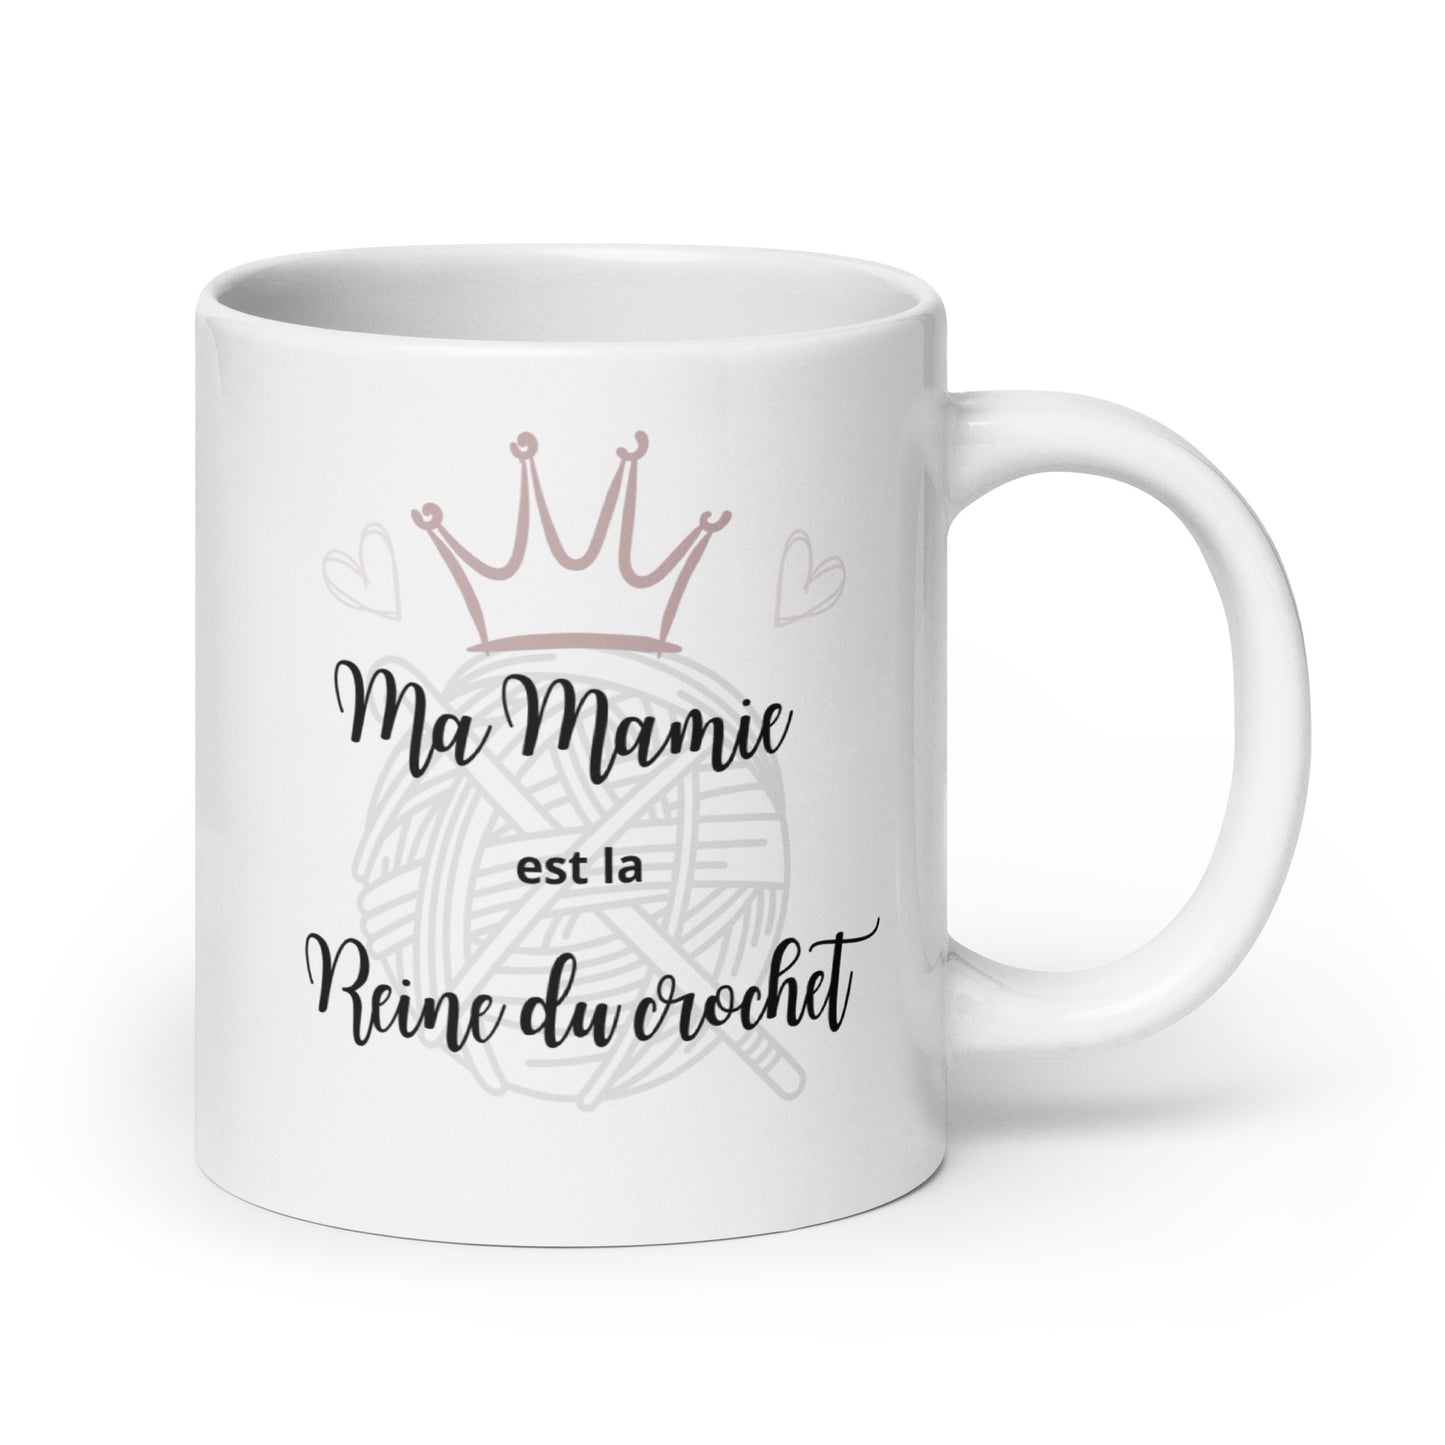 Mug "Ma Mamie"